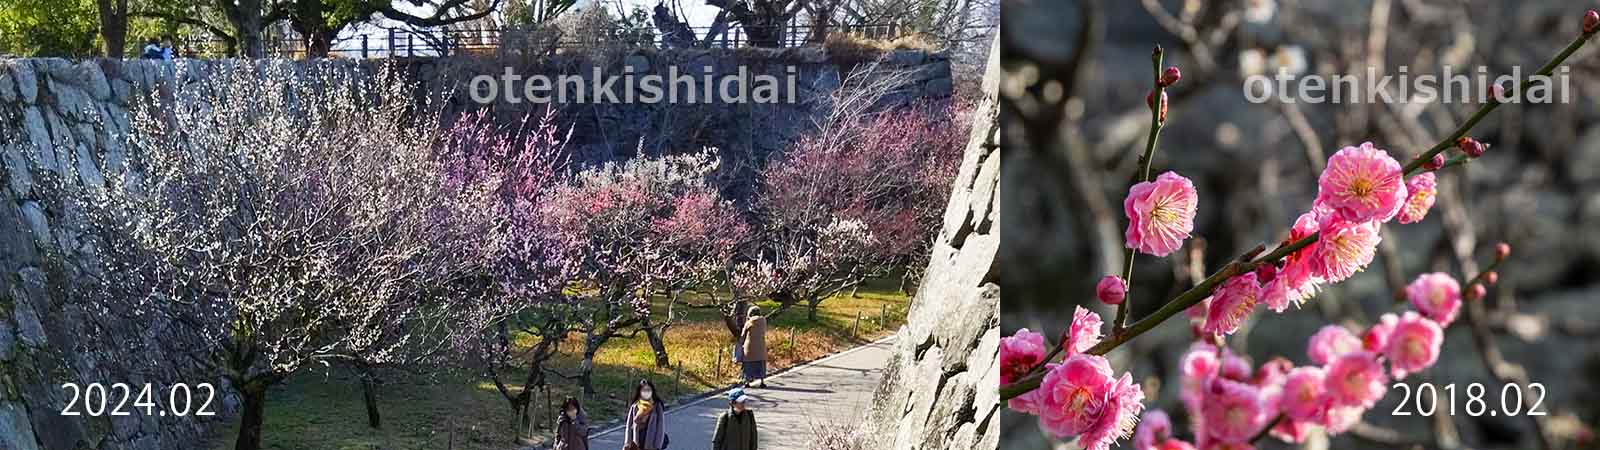 舞鶴公園の石垣と梅の花